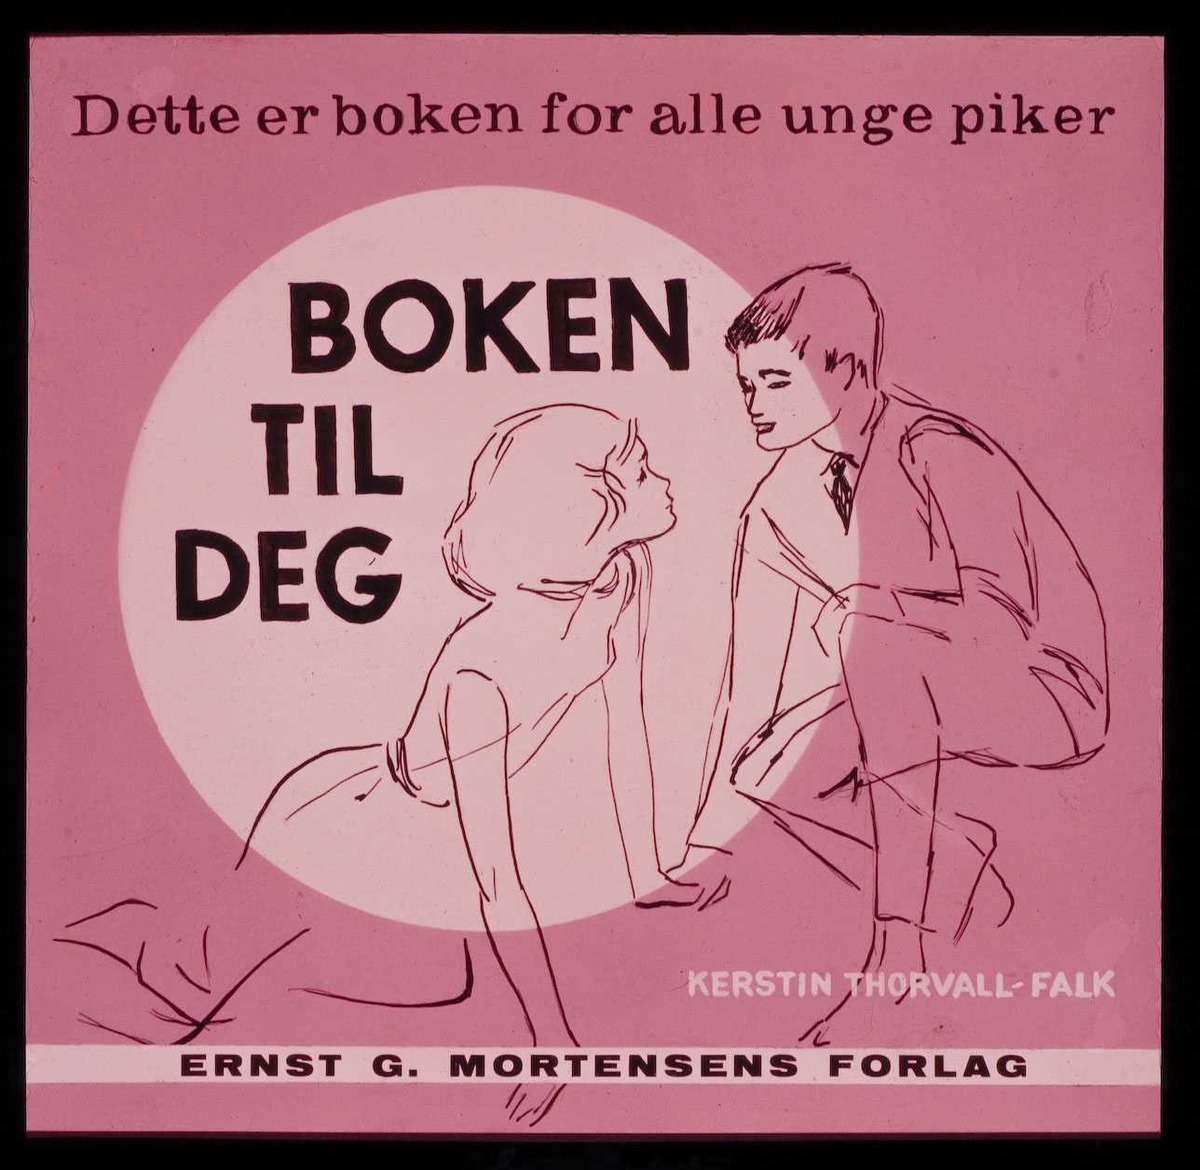 Kinoreklame fra Ski. Boken til deg. Dette er boken for alle unge piker fra Ernst G. Mortensens Forlag.